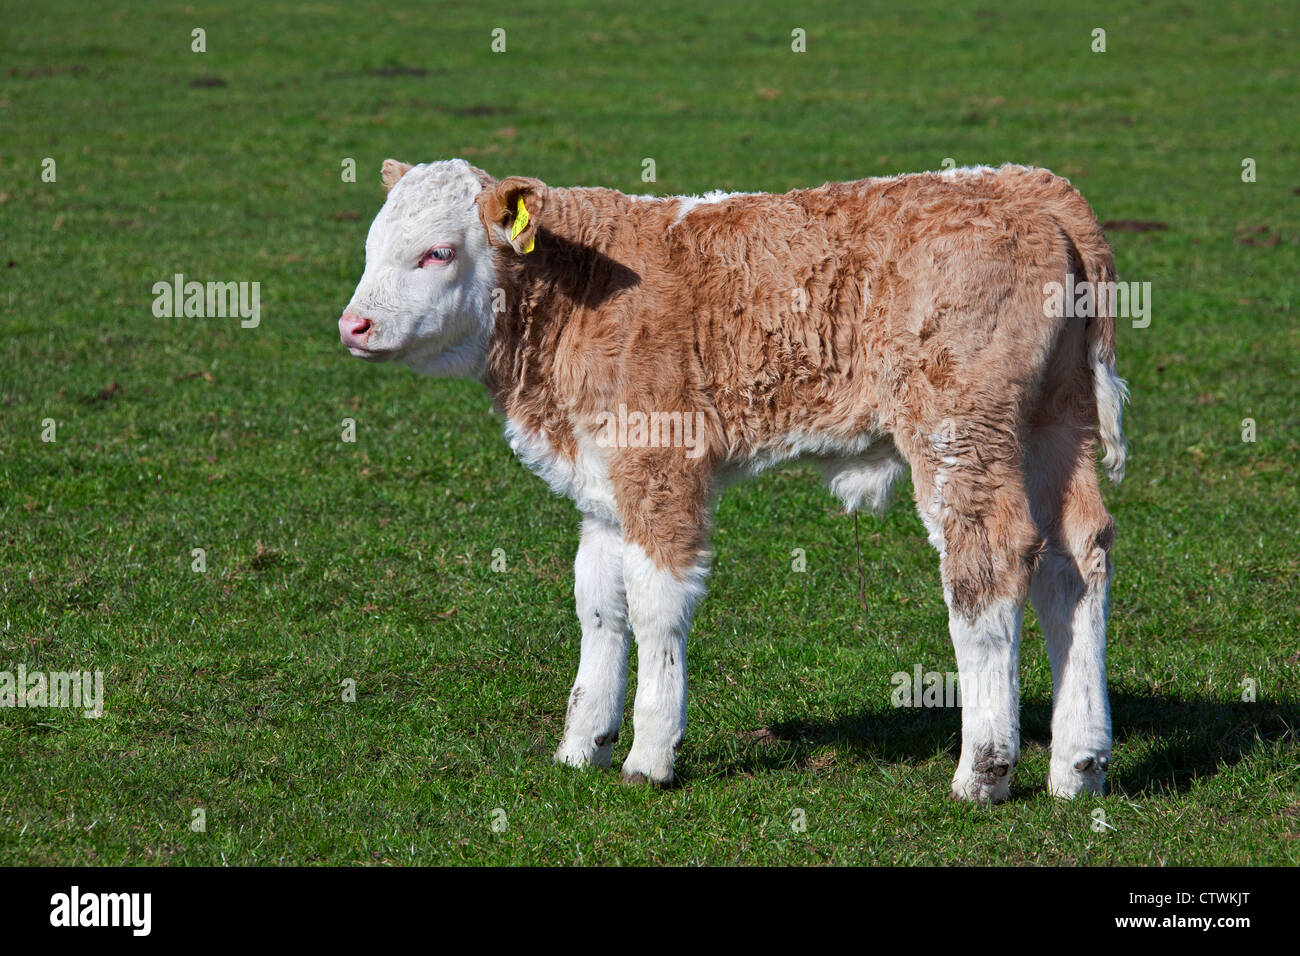 Polpaccio (Bos taurus) da domestico mucca contrassegnati in giallo di marchi auricolari in entrambe le orecchie in campo, Germania Foto Stock